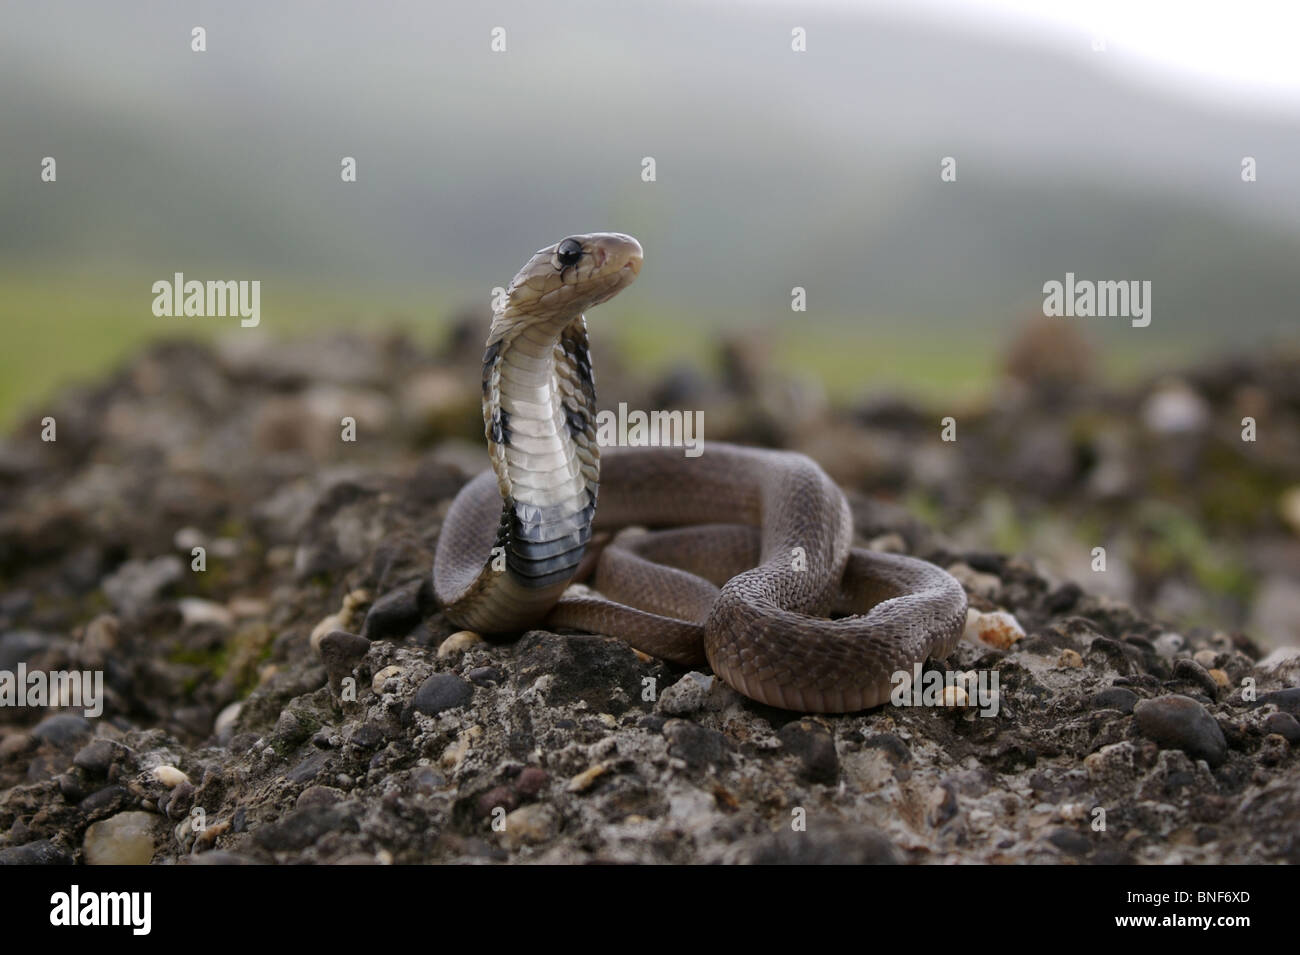 Juvenile of Indian Spectacled Cobra (Naja naja) Naja naja is a species of venomous snake. Stock Photo